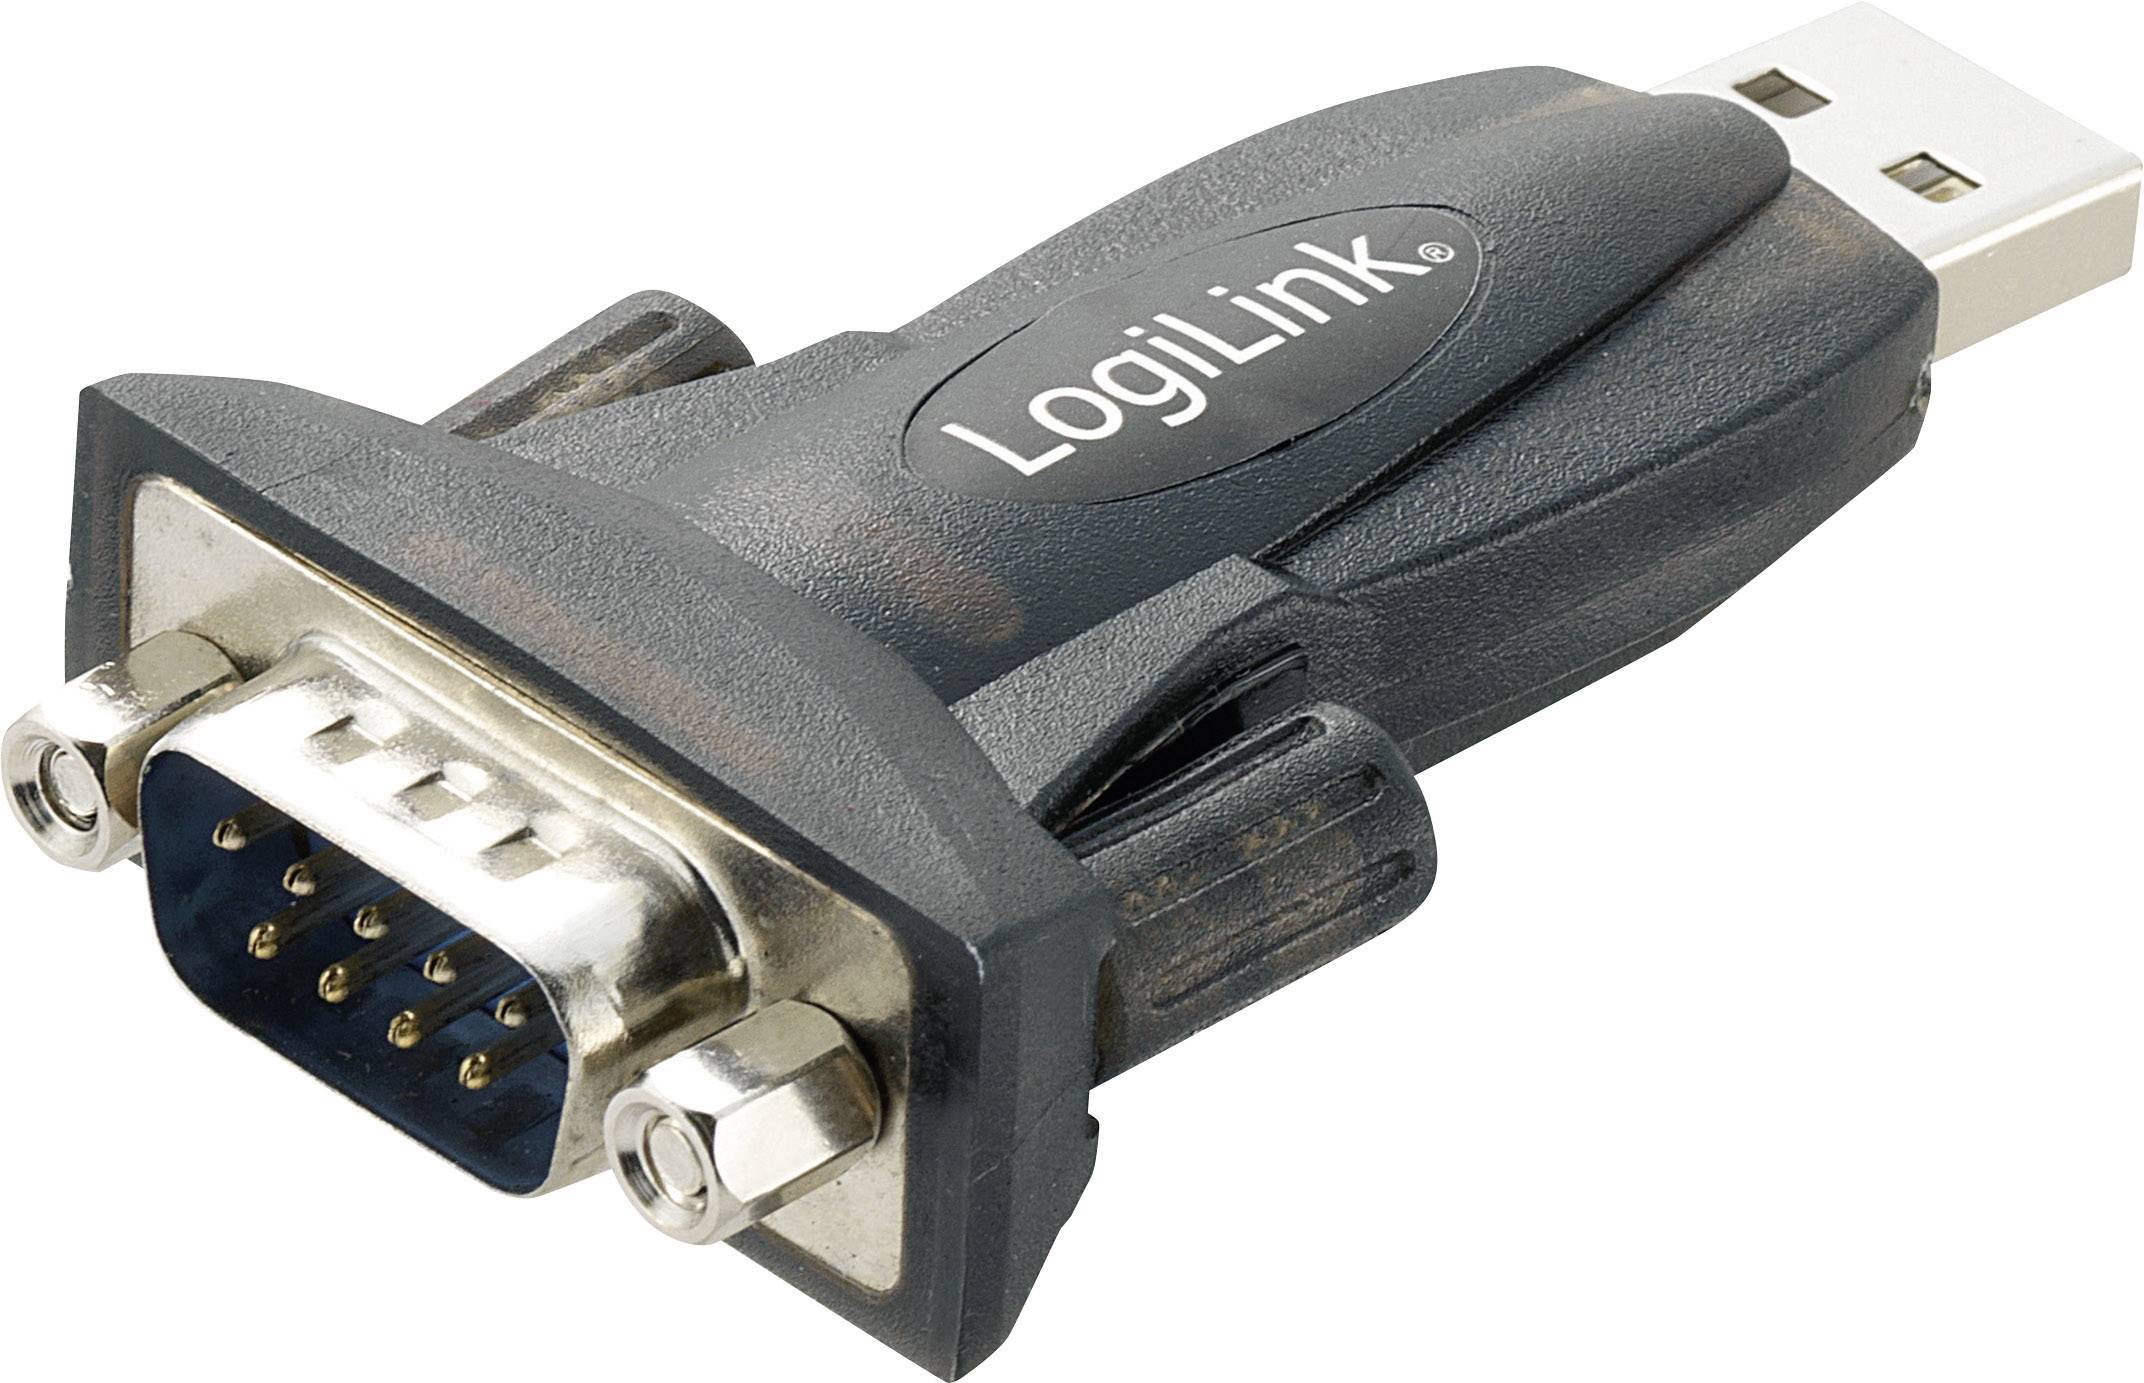 LogiLink Series [1x D-SUB-plug - 1x USB 2.0 connector A] AU0002E | Conrad.com